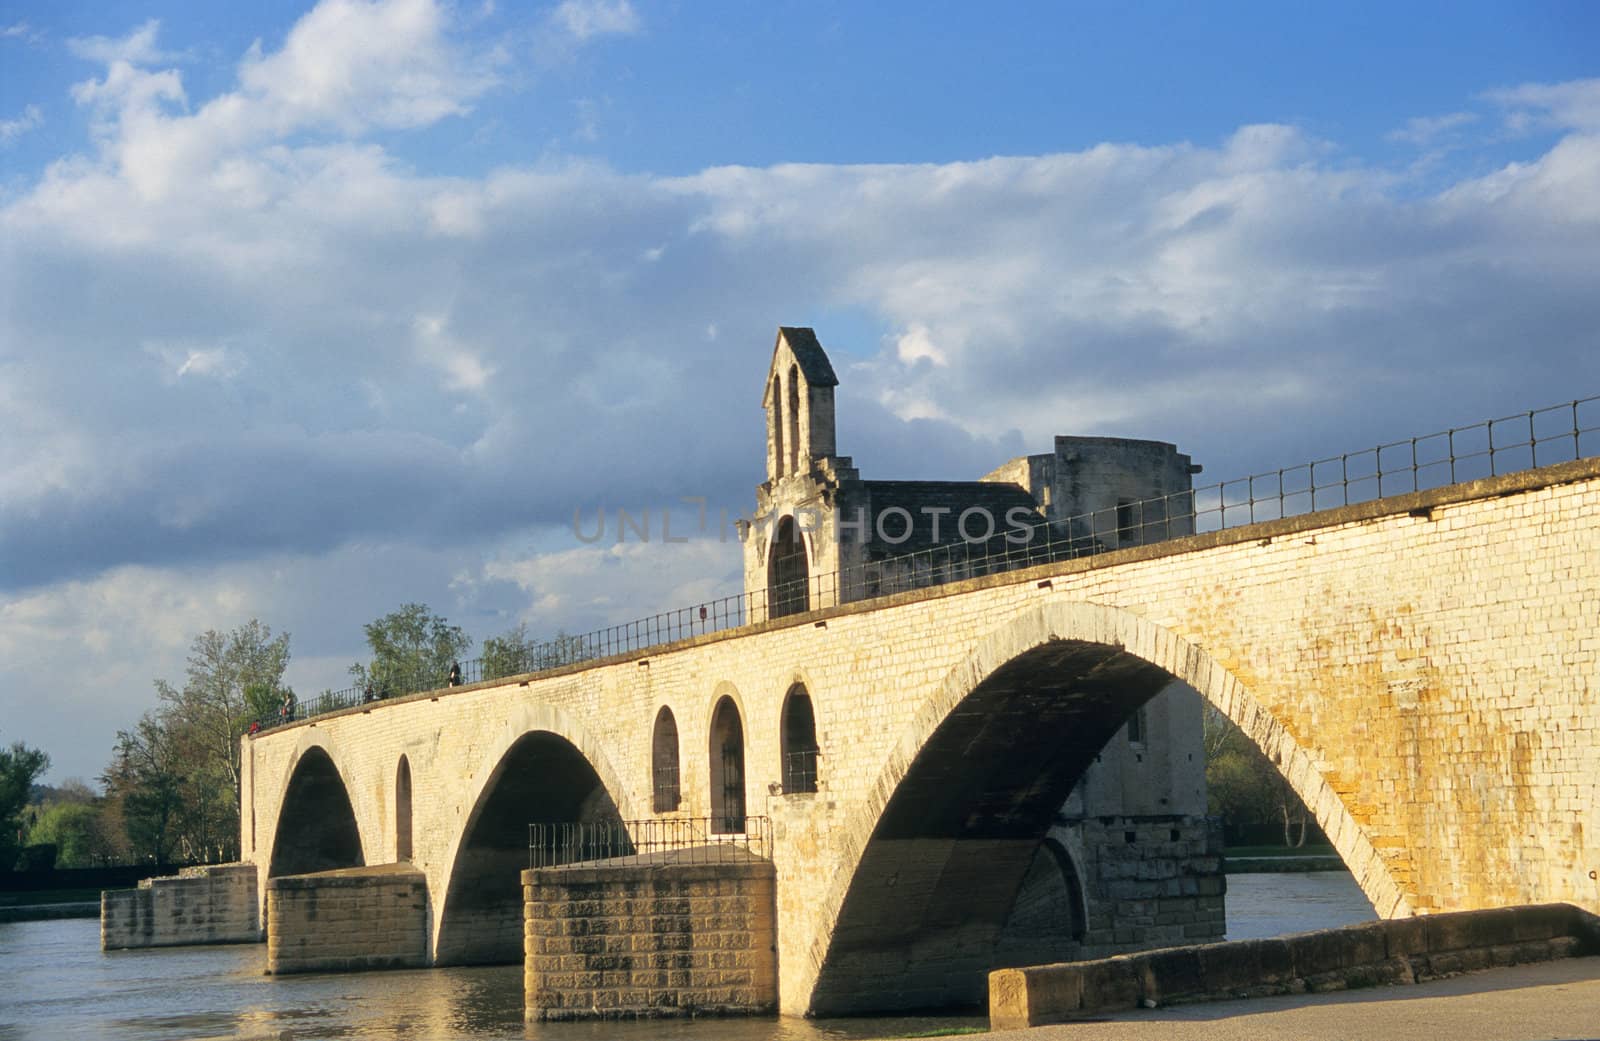 The famous St. Benezet bridge in Avignon, France made famous by the folk song "Sur la Pont D'Avignon."